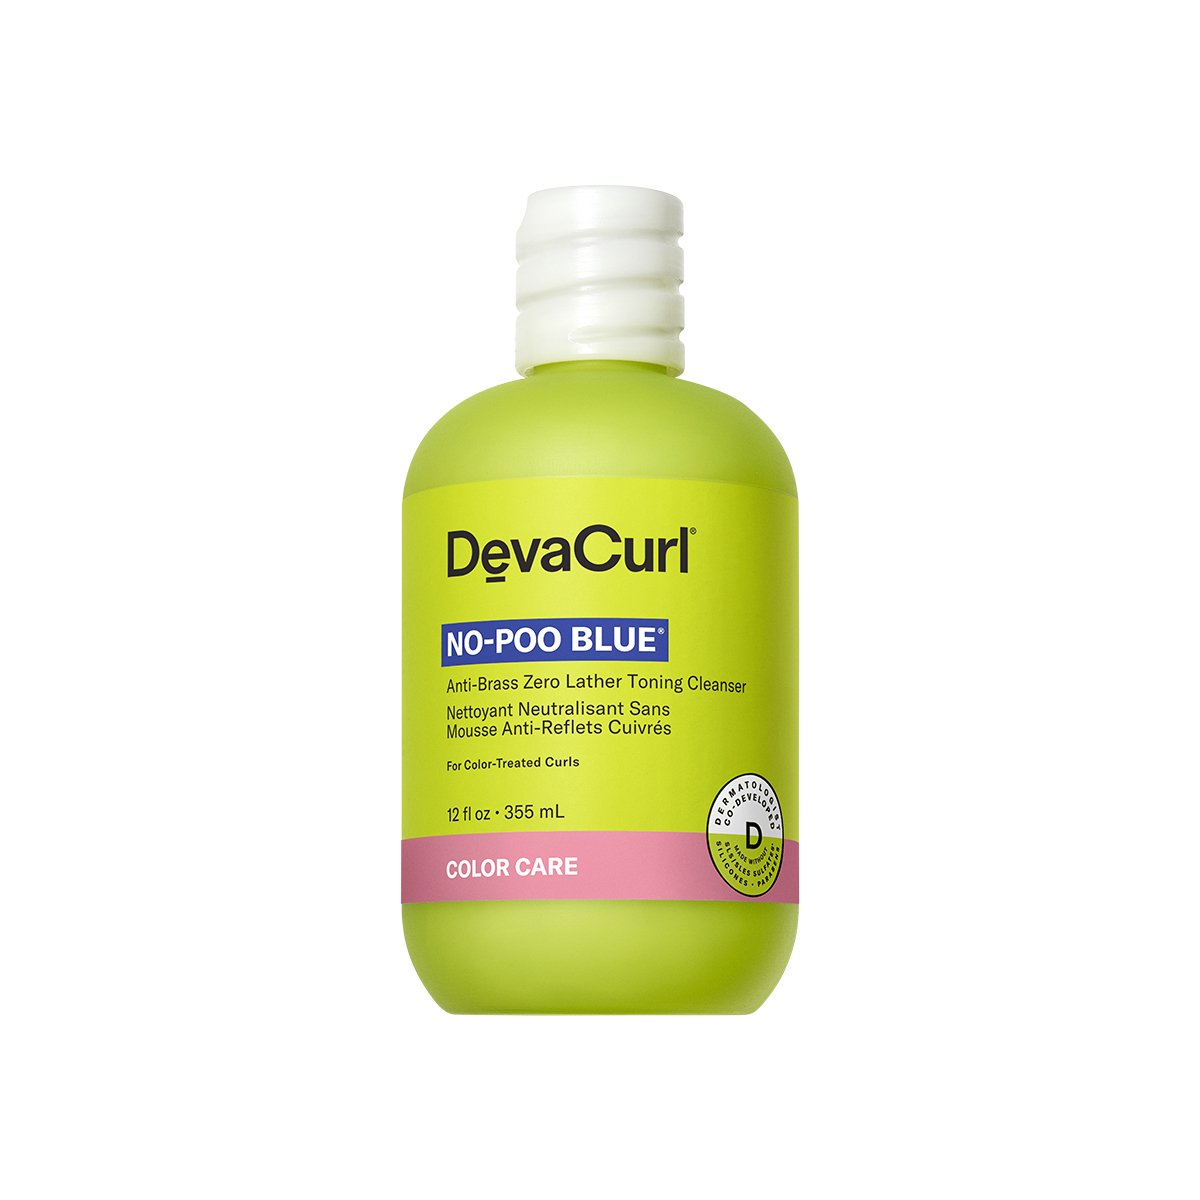 DevaCurl No-Poo Blue 355 ml - ProCare Outlet by Deva Curl